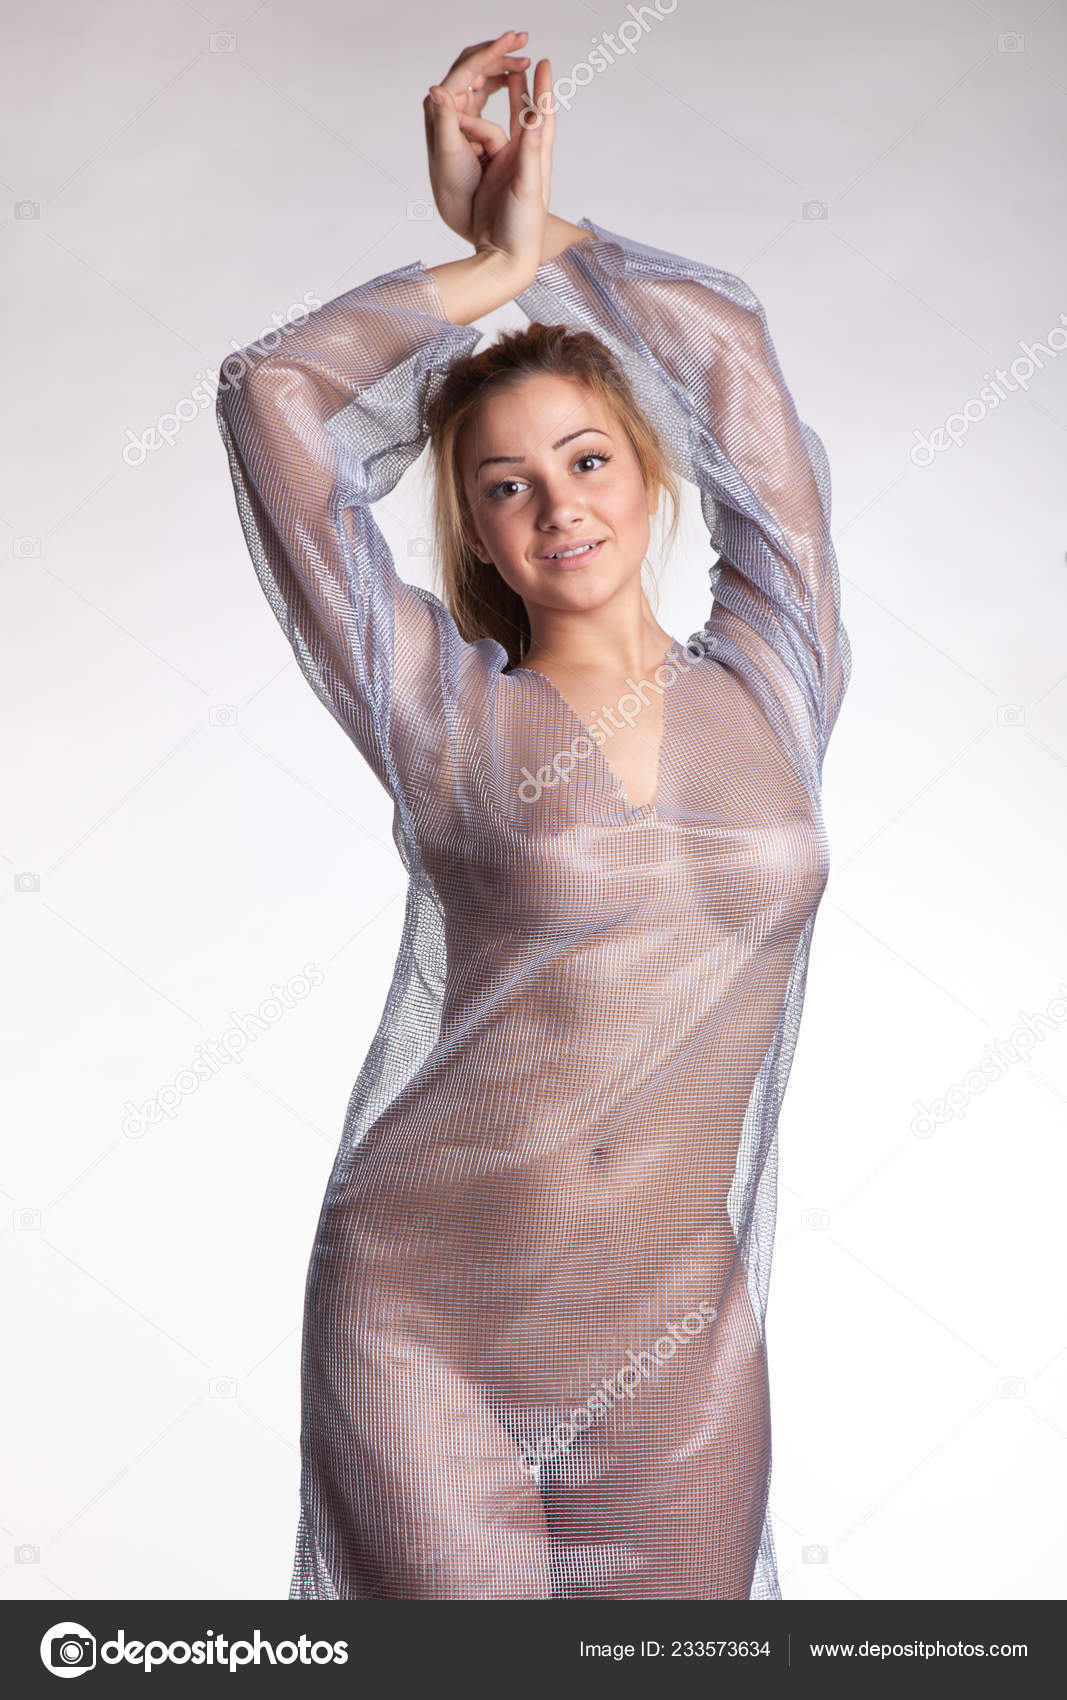 https://st4n.depositphotos.com/10086424/23357/i/1600/depositphotos_233573634-stock-photo-young-beautiful-girl-posing-nude.jpg